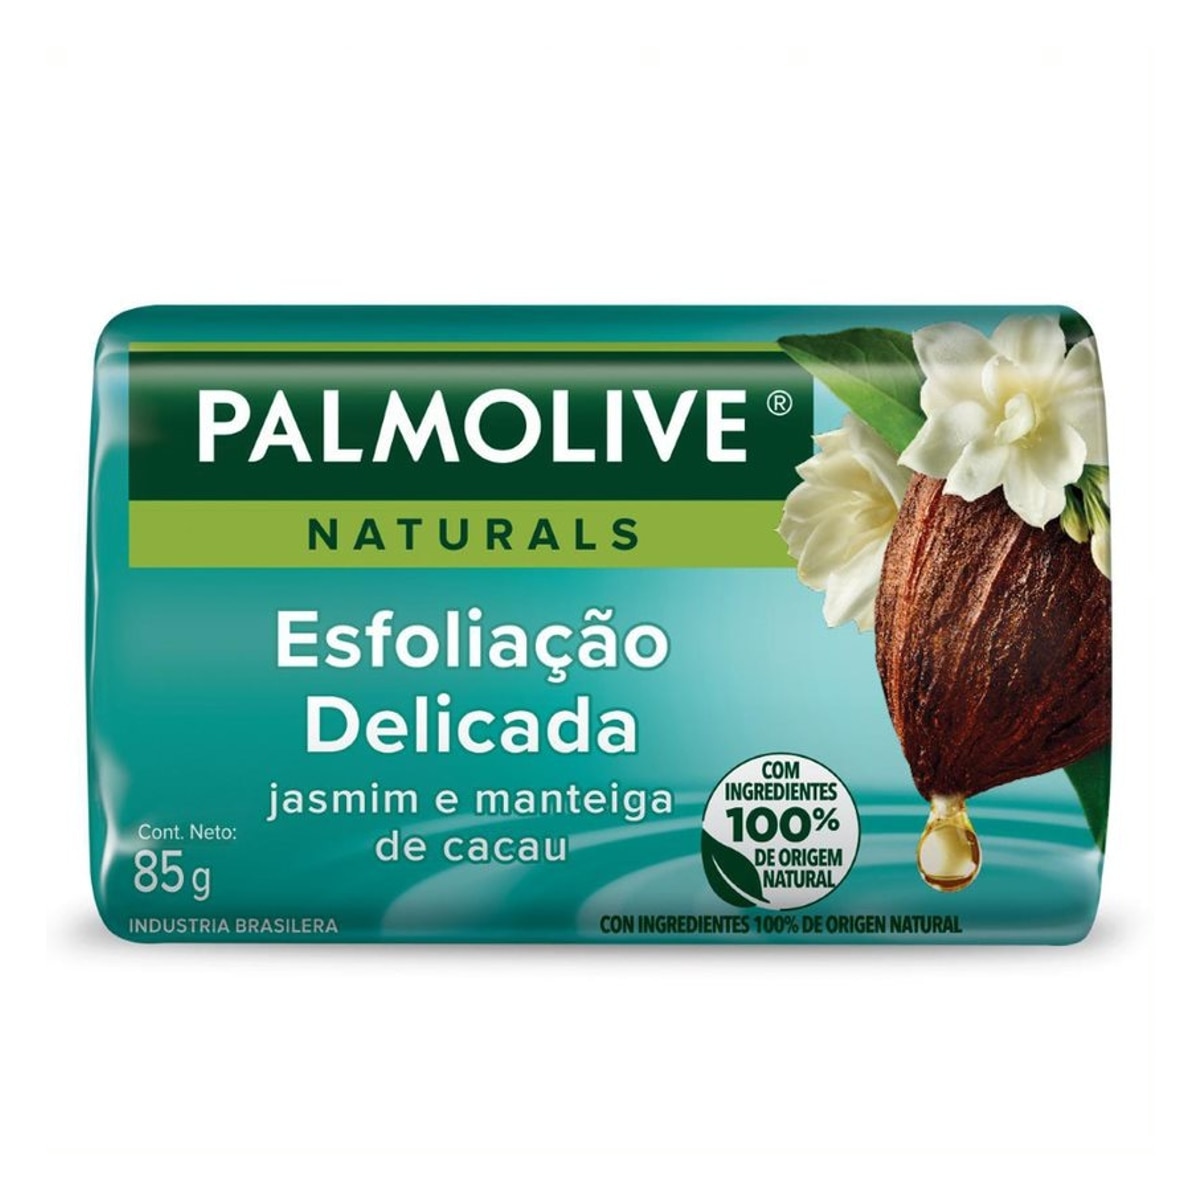 Sabonete em Barra Palmolive Naturals Esfoliacao Delicada 85g